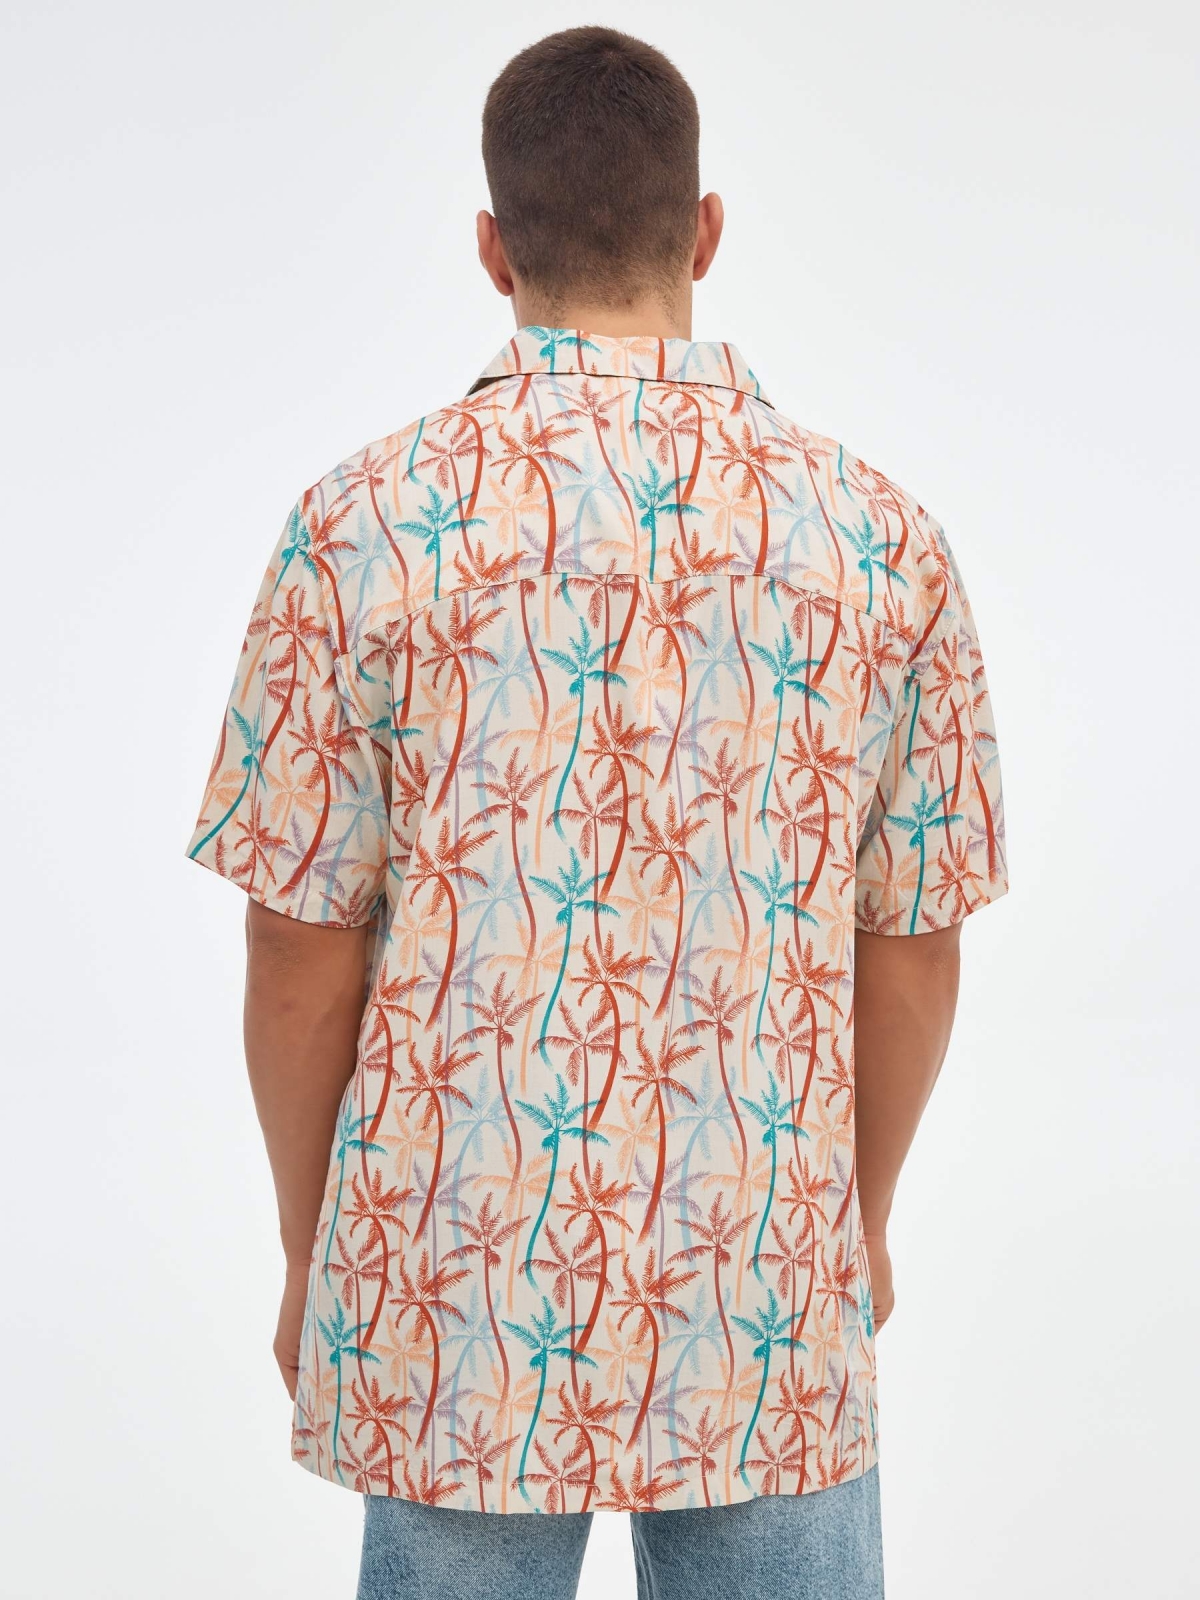 Camisa de palma multicolorida off white vista meia traseira